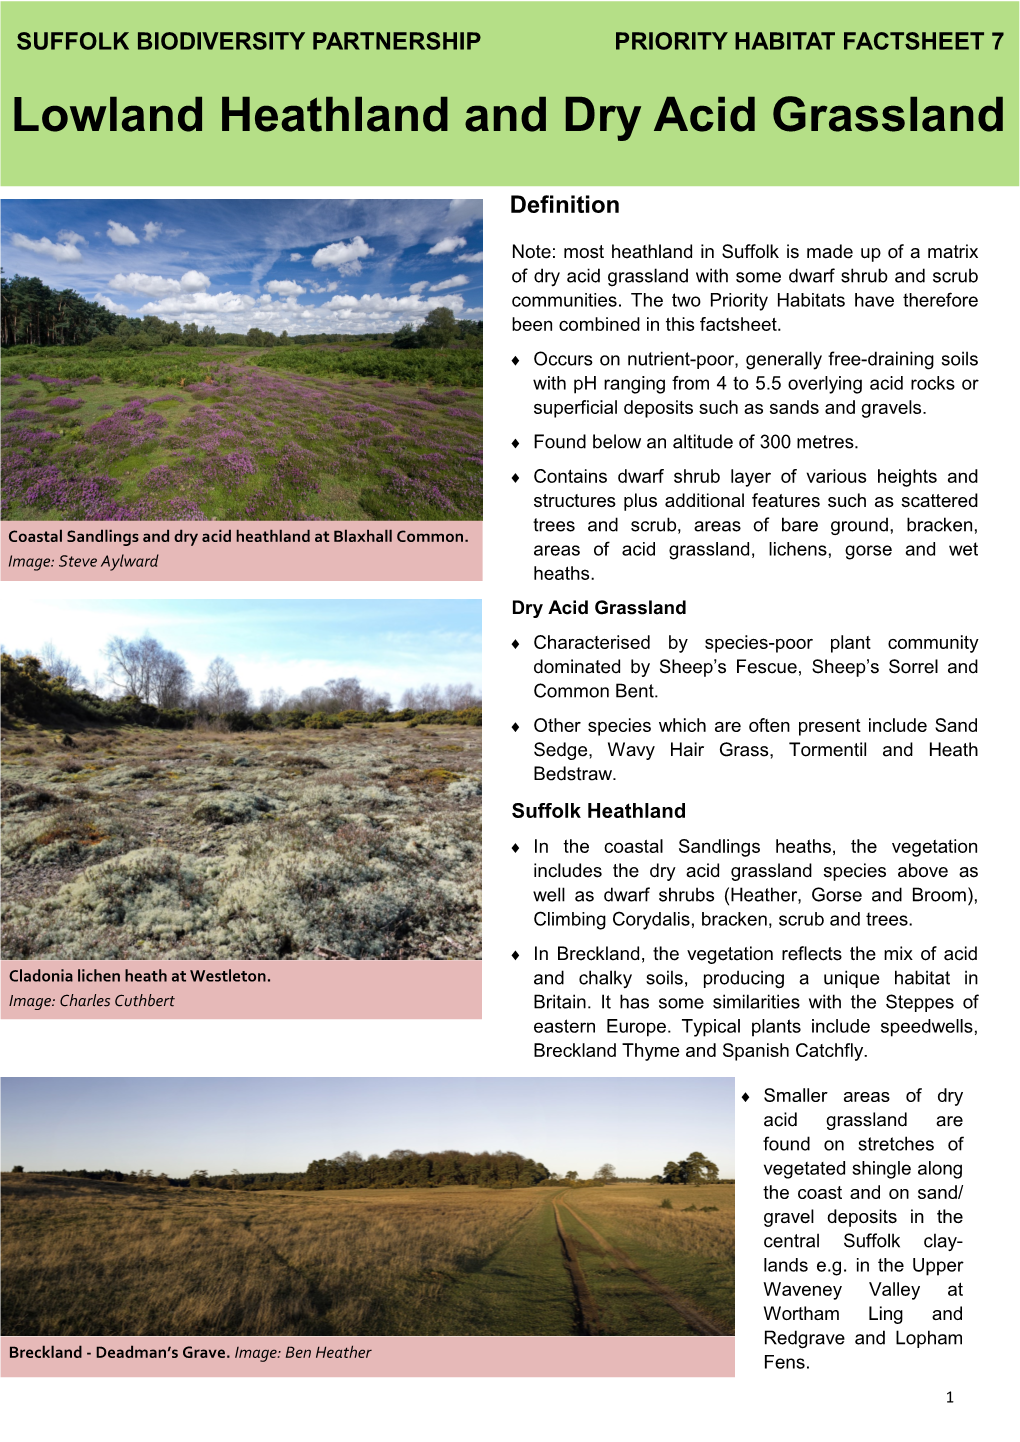 Lowland Heathland and Dry Acid Grassland